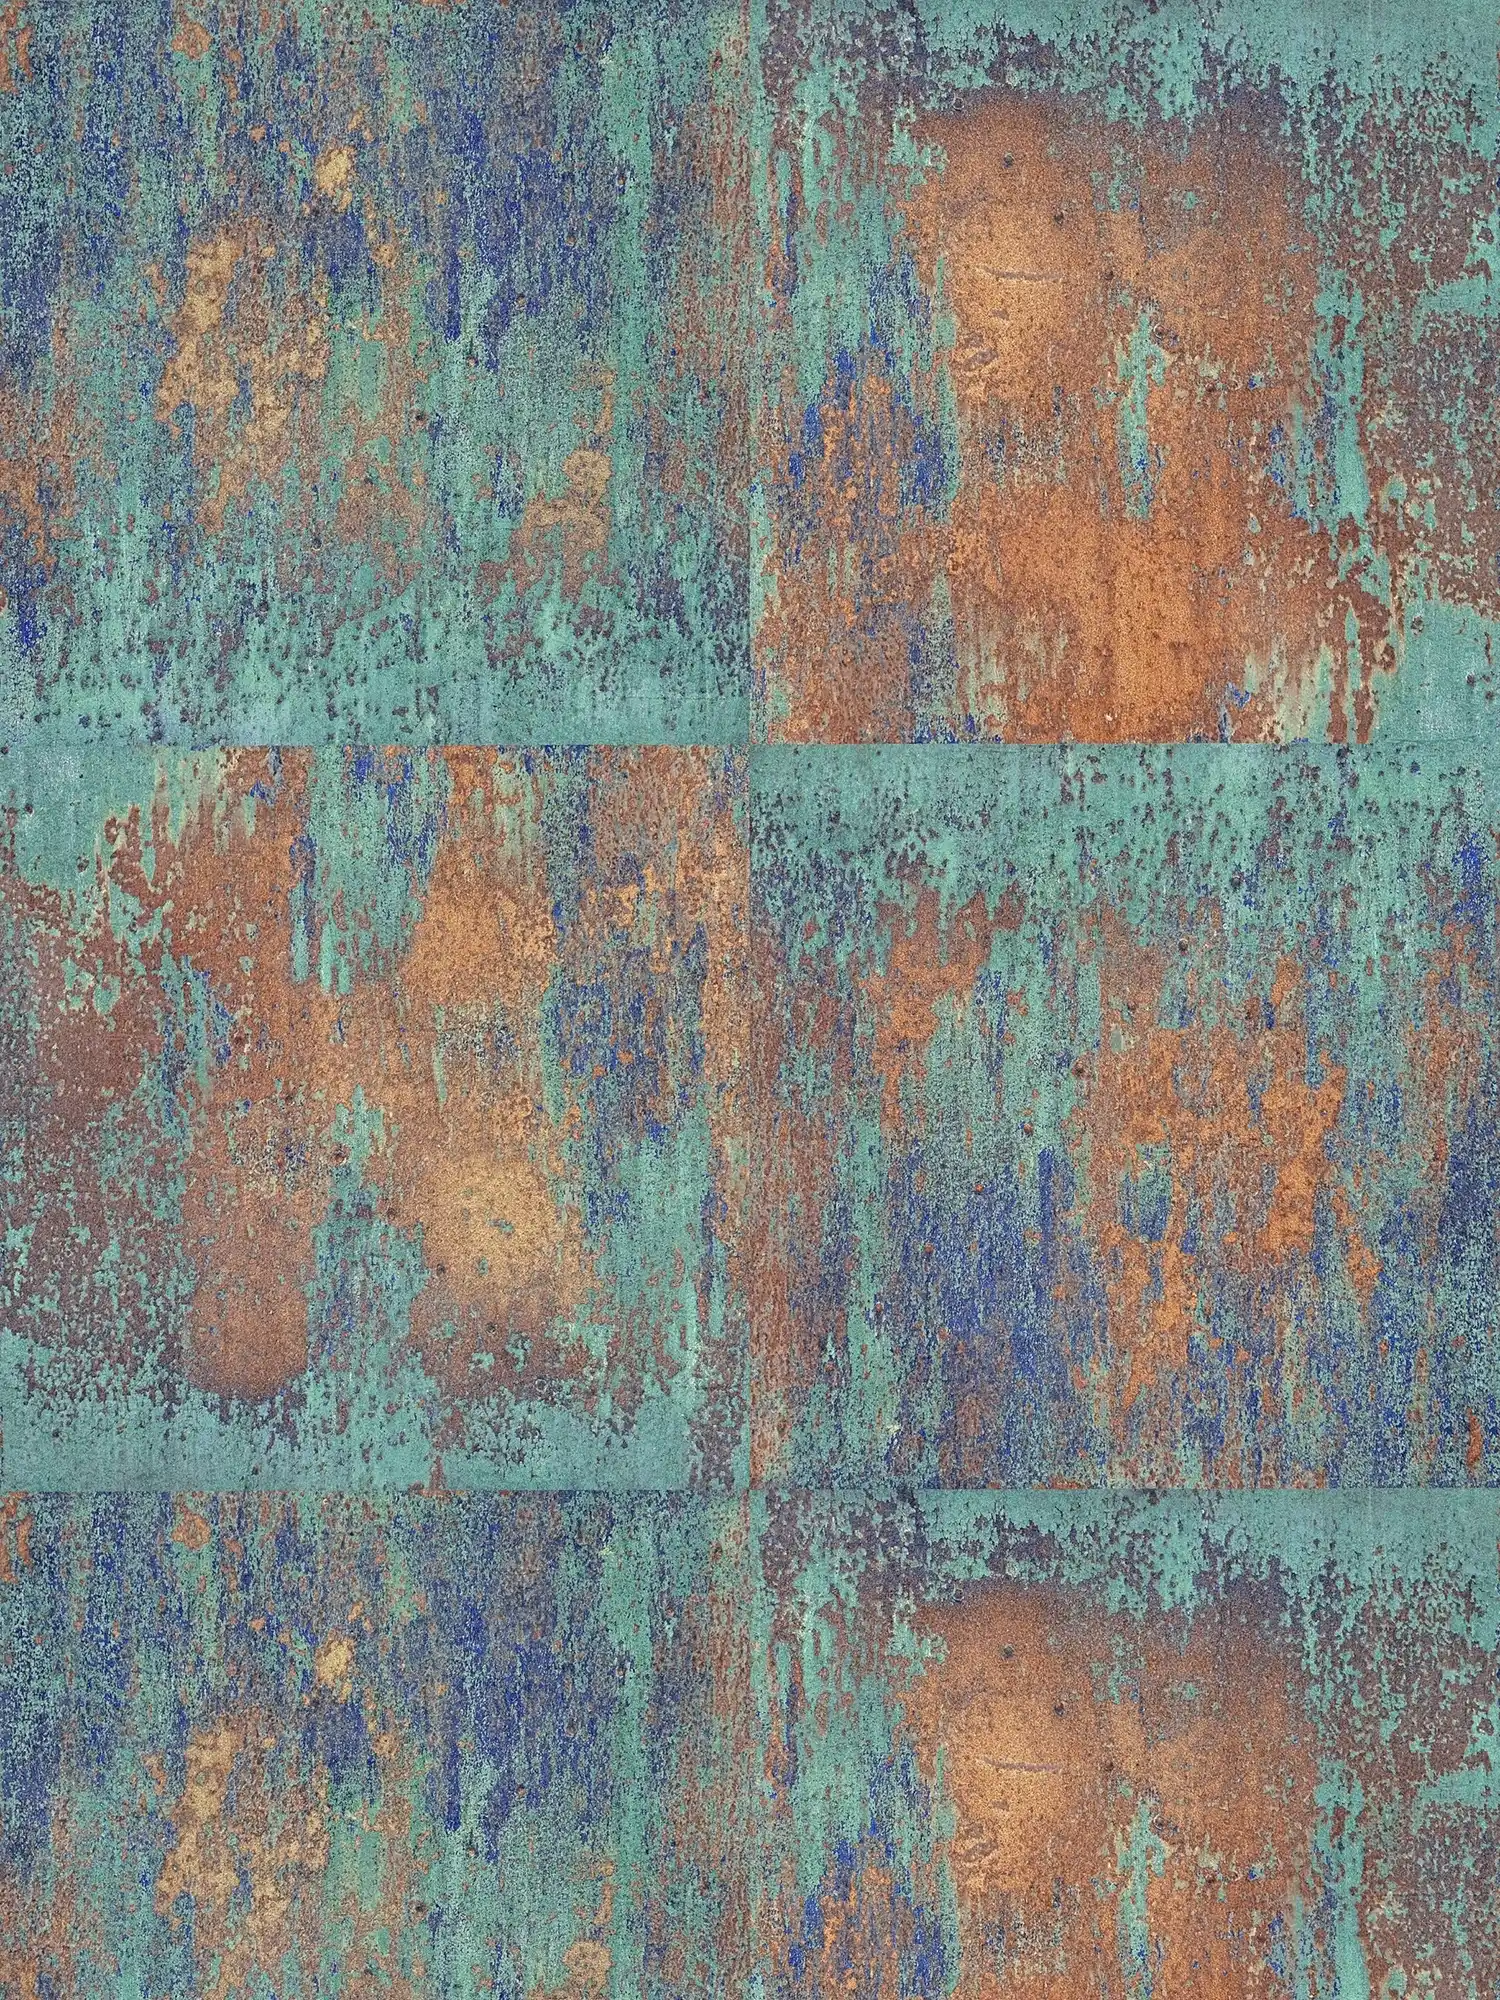 Patinagedessin van vliesbehang met roest- en kopereffecten - blauw, bruin, koper
